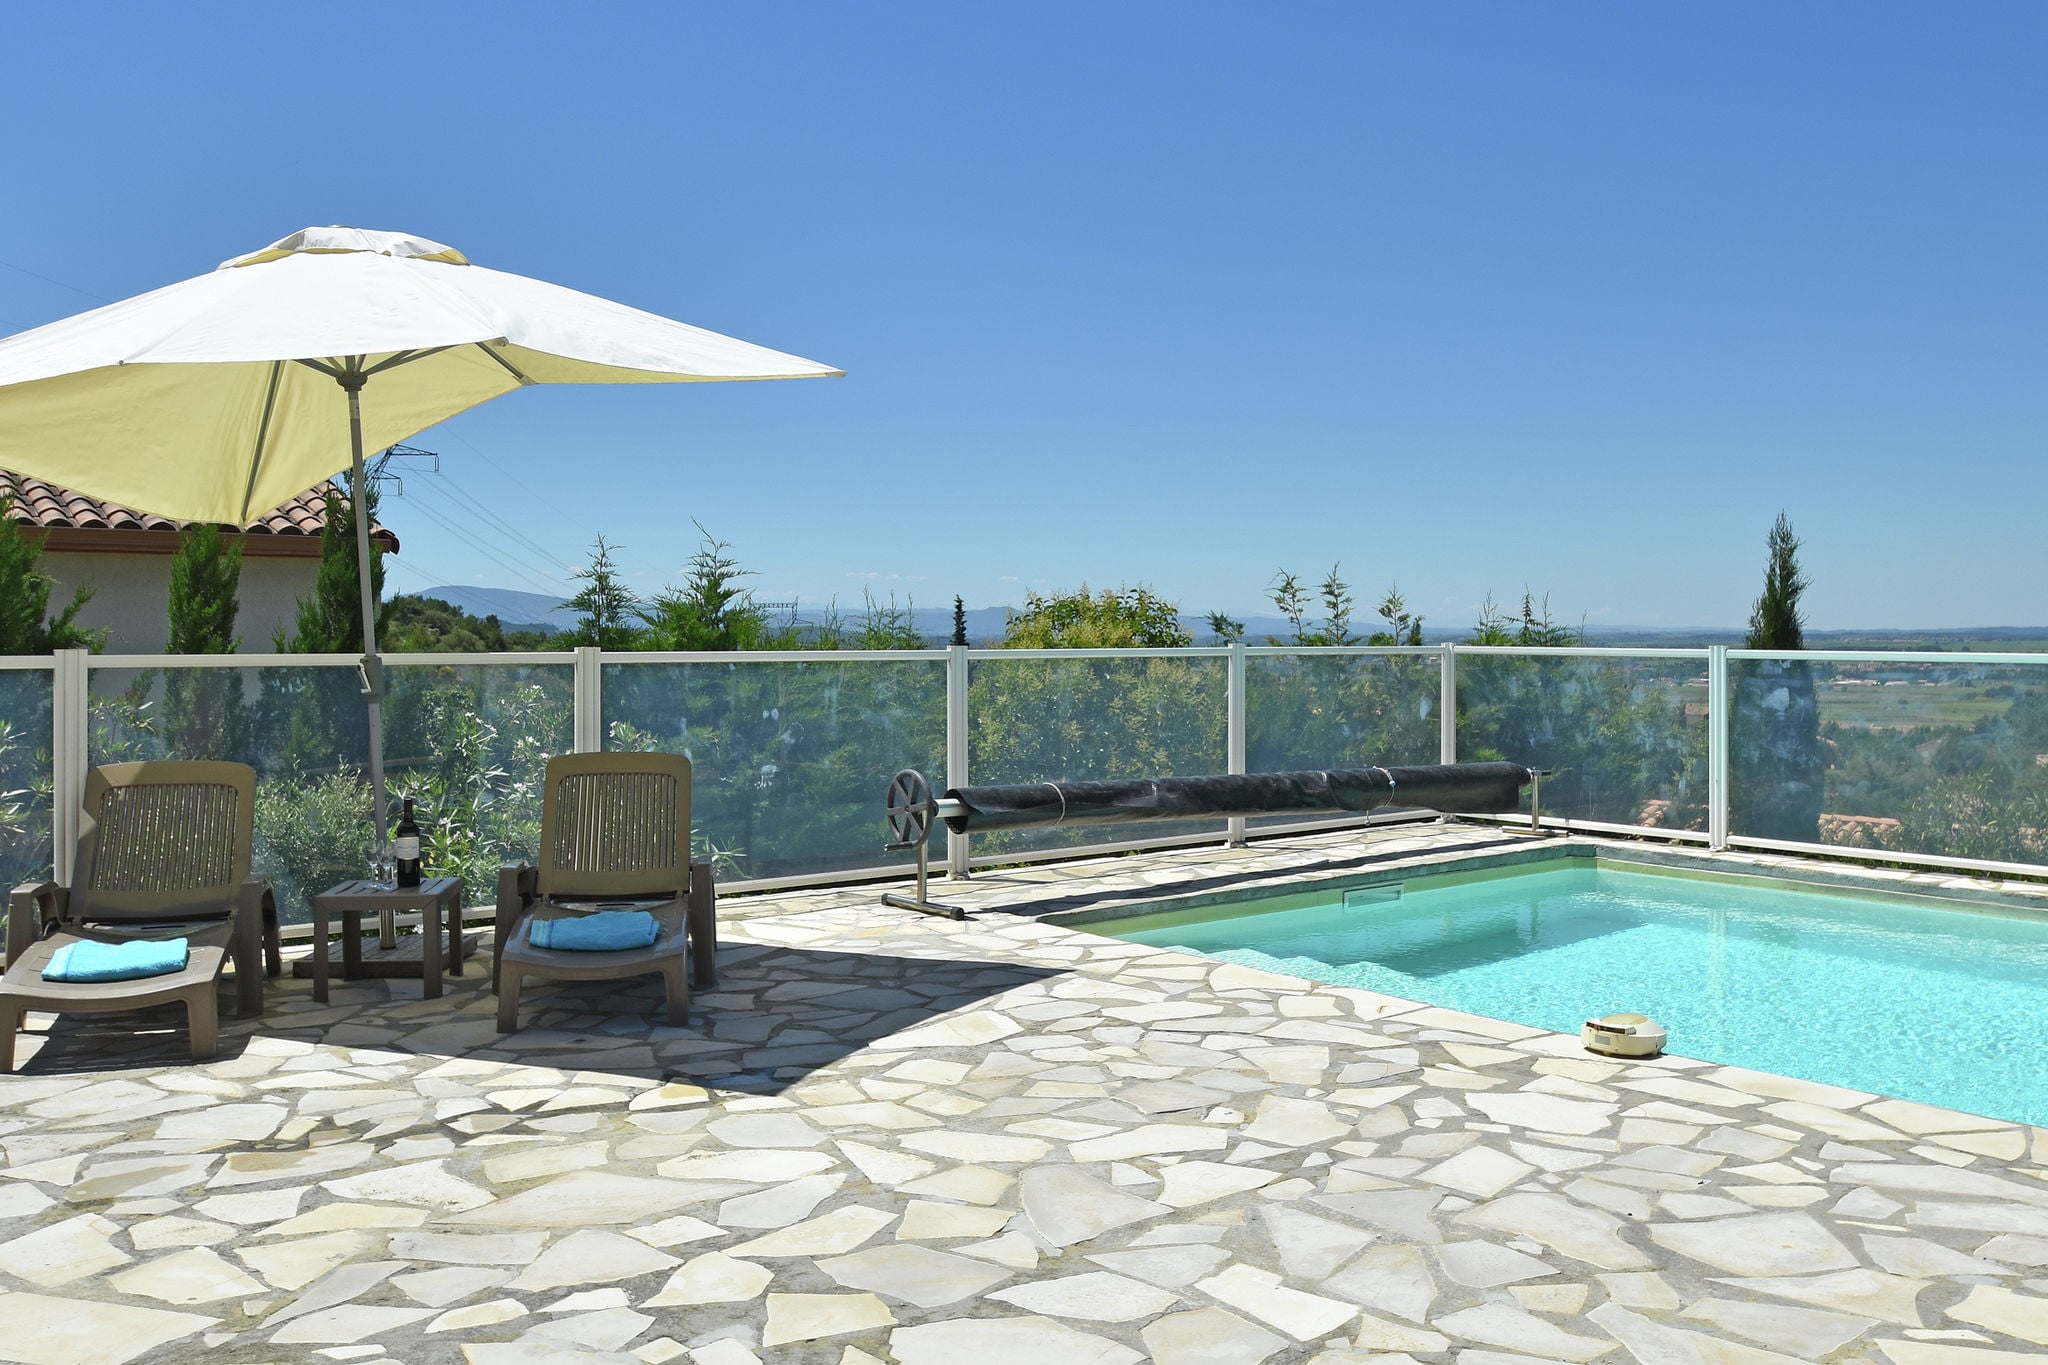 Luxe villa met privézwembad, airconditioning en weids uitzicht